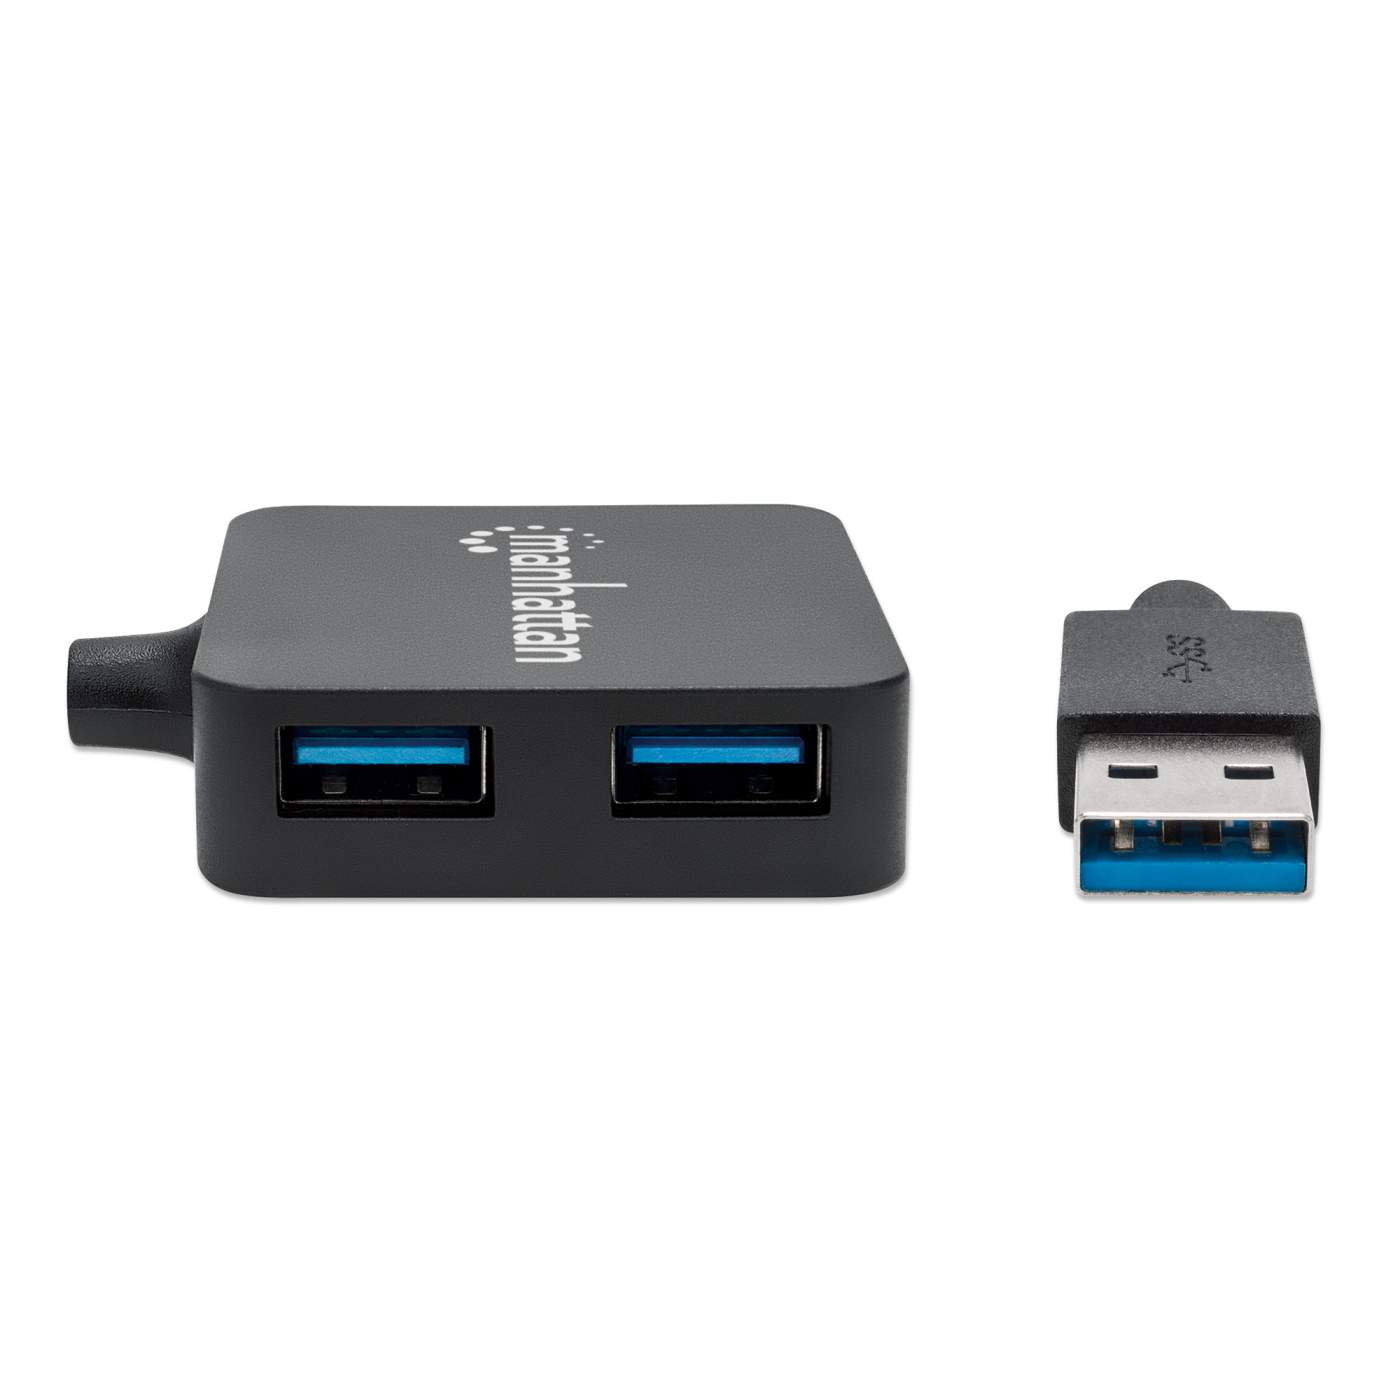 SuperSpeed USB 3.0 4-Port Powered Hub